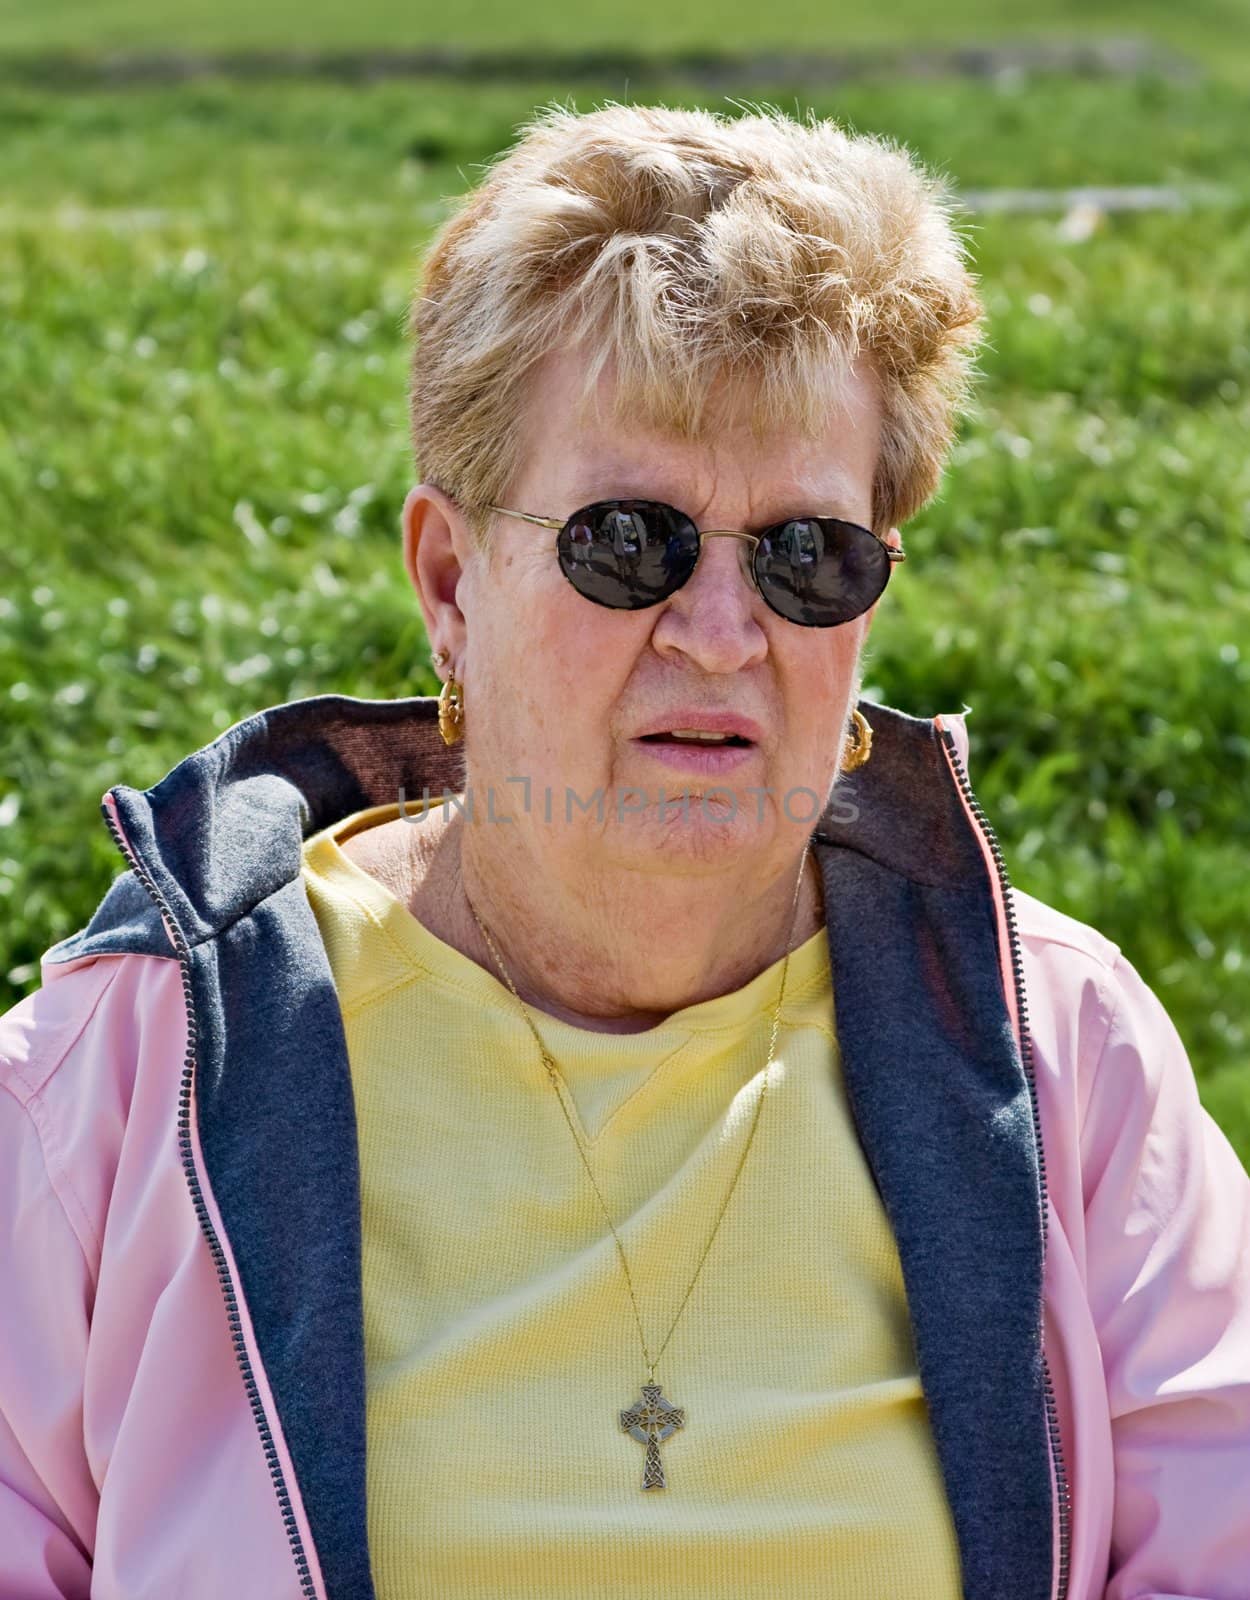 Portrait of a healthy senior citizen